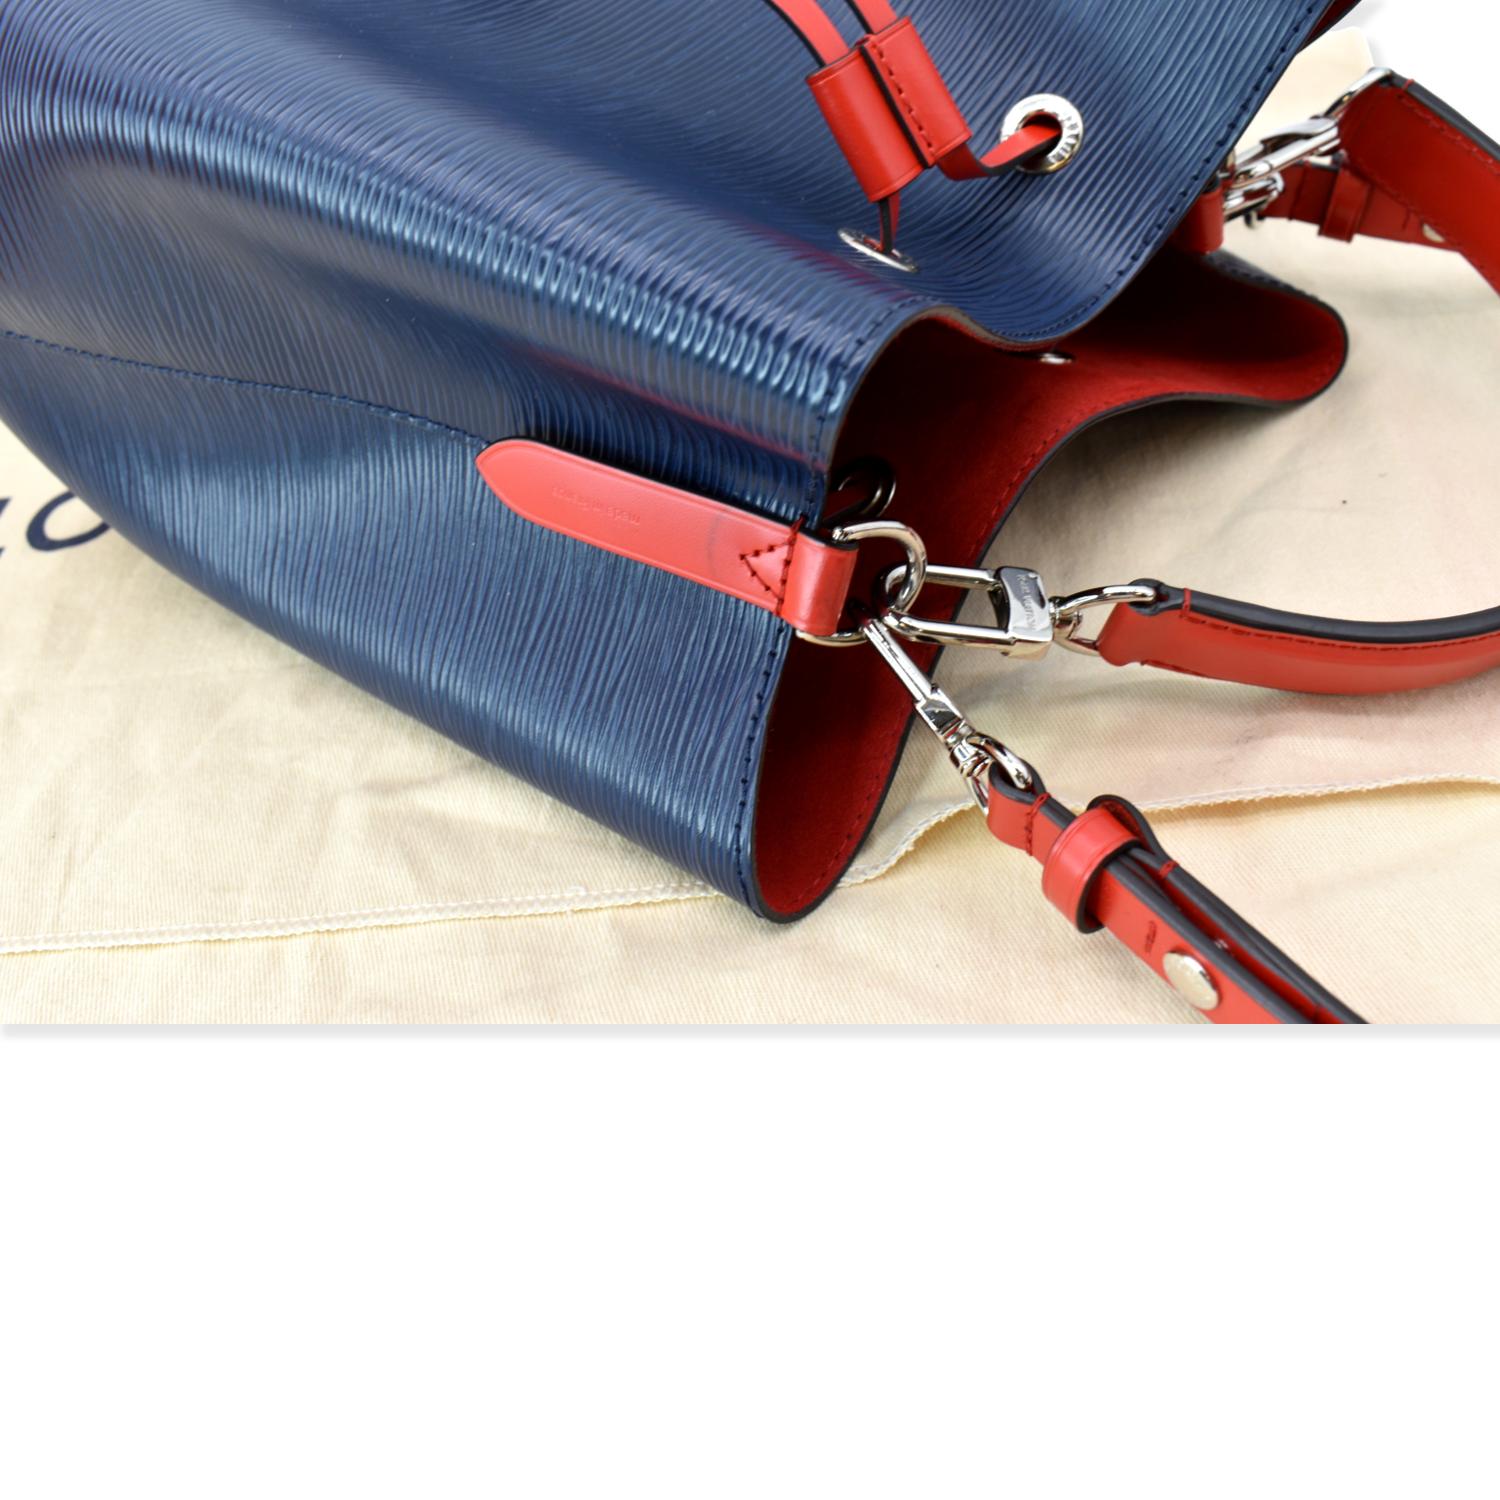 Louis Vuitton] Louis Vuitton Neonoe Handbag 2WAY shoulder M55394 Epil –  KYOTO NISHIKINO